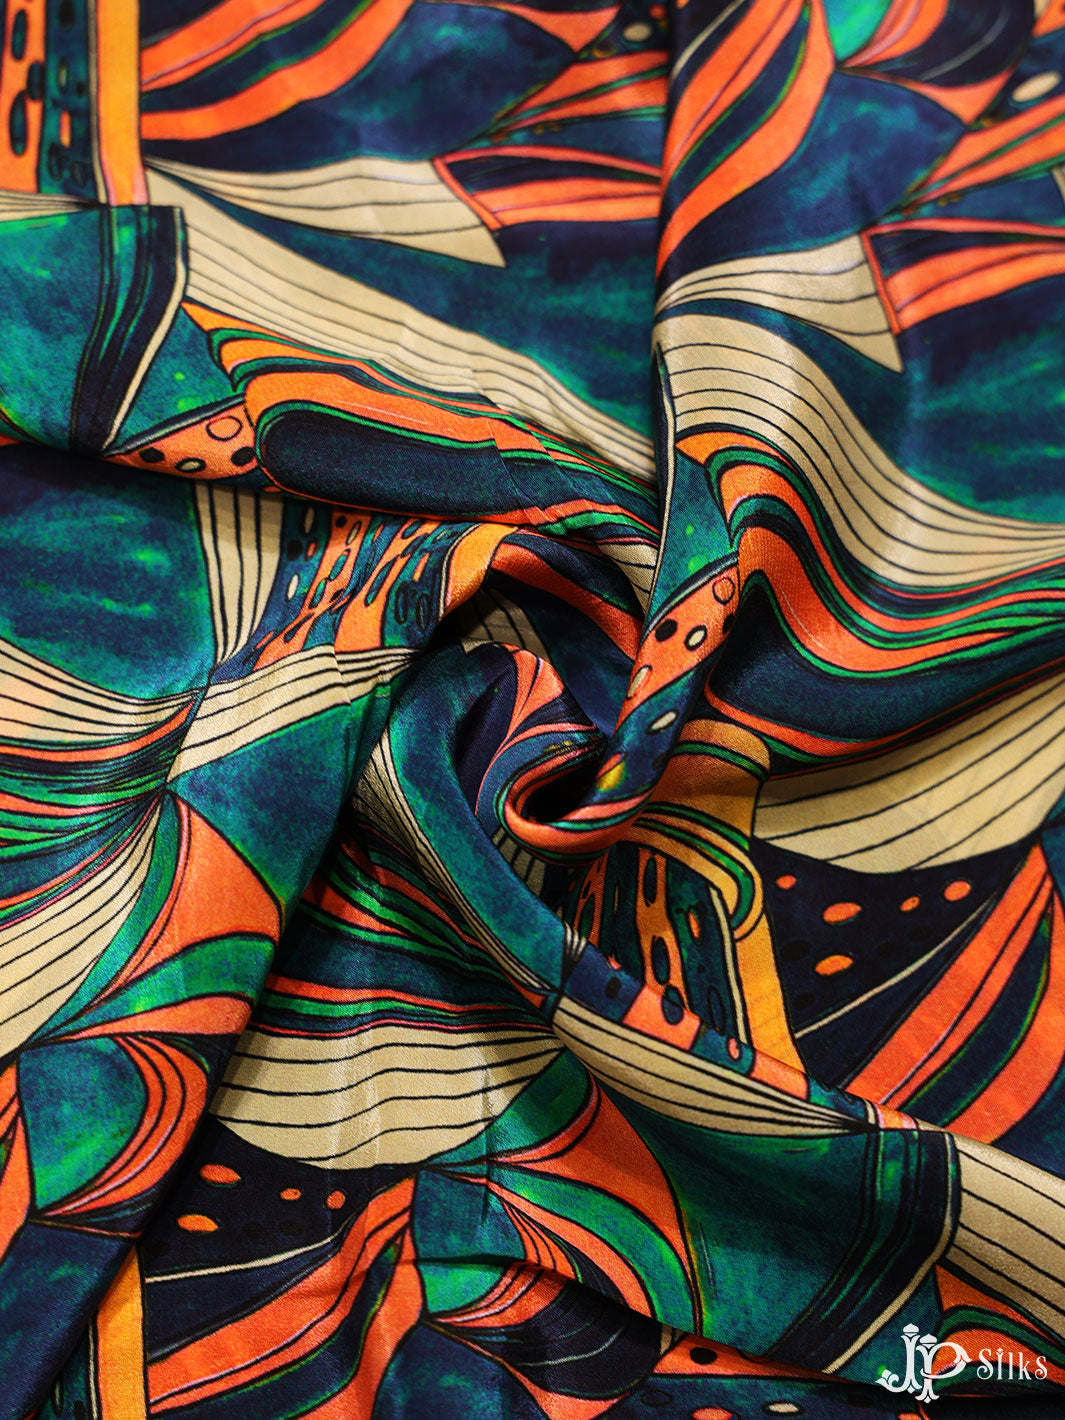 Multicolor Digital Printed Viscose Crepe Fabric - E4015 - View 4